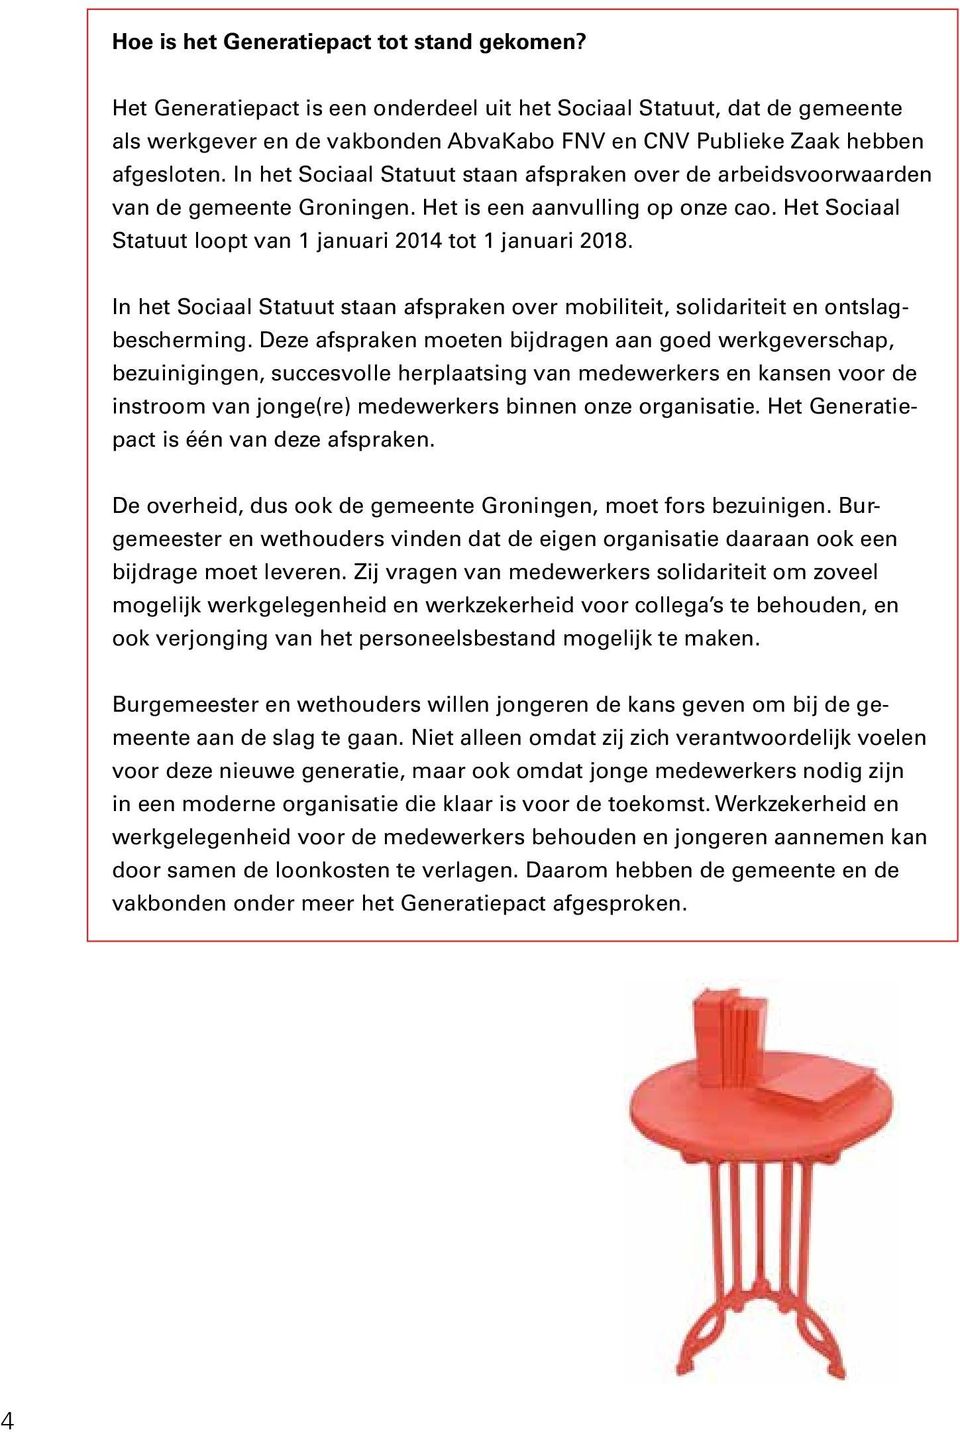 In het Sociaal Statuut staan afspraken over de arbeidsvoorwaarden van de gemeente Groningen. Het is een aanvulling op onze cao. Het Sociaal Statuut loopt van 1 januari 2014 tot 1 januari 2018.